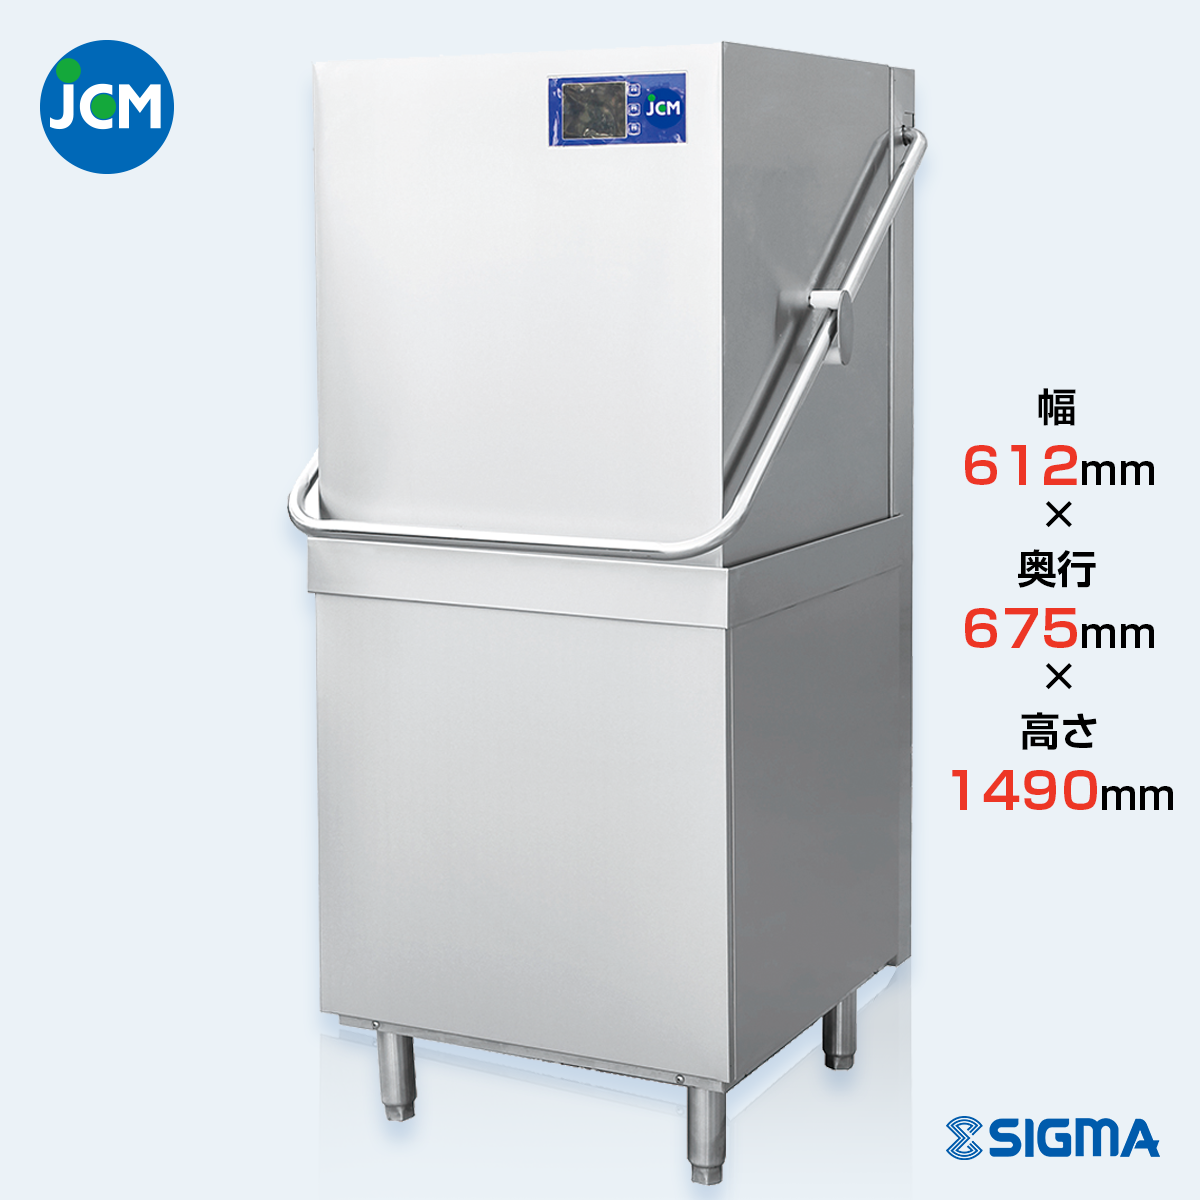 JCMD-50D3 業務用食器洗浄機／幅612×奥行675×高さ1490mm